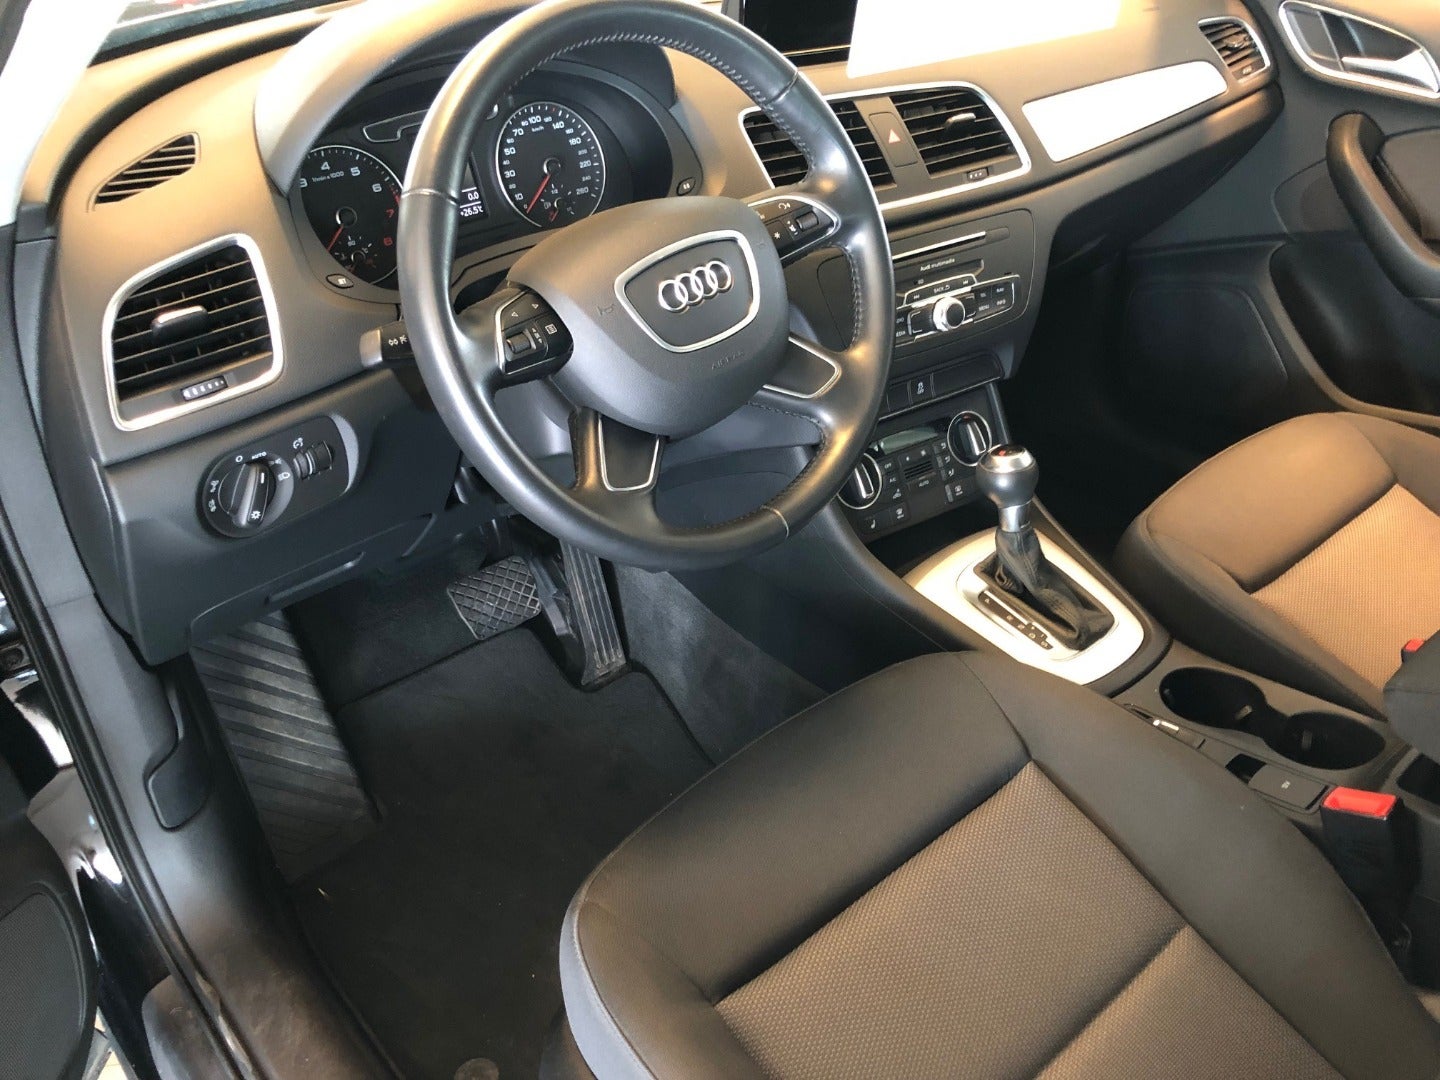 Audi Q3 2018